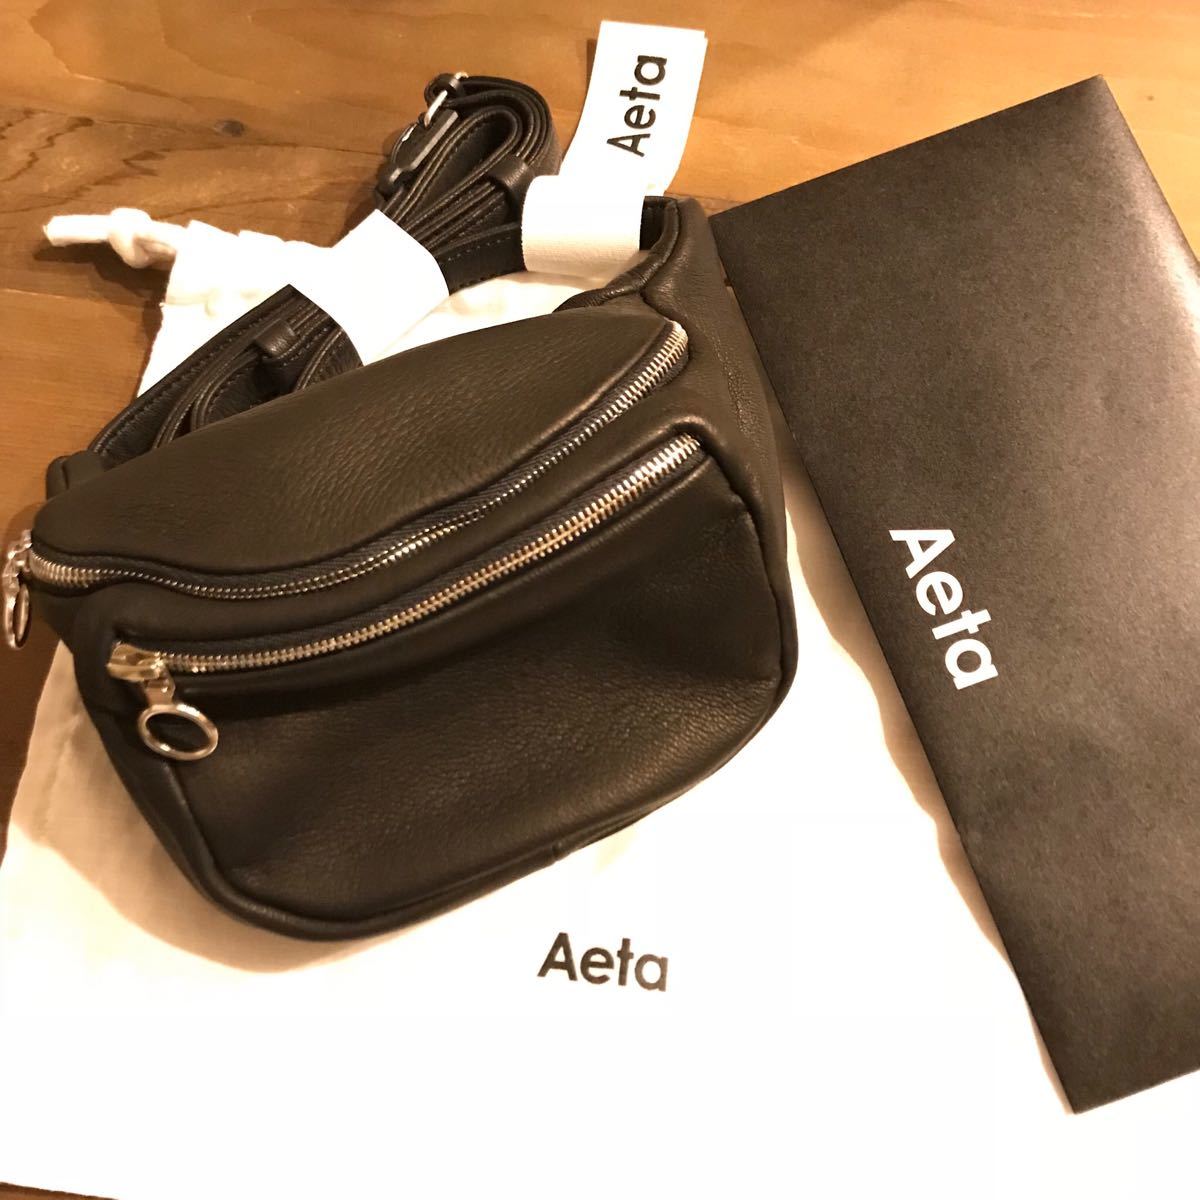 aeta official online buy deer waist pouch s DA11 leather belt bag